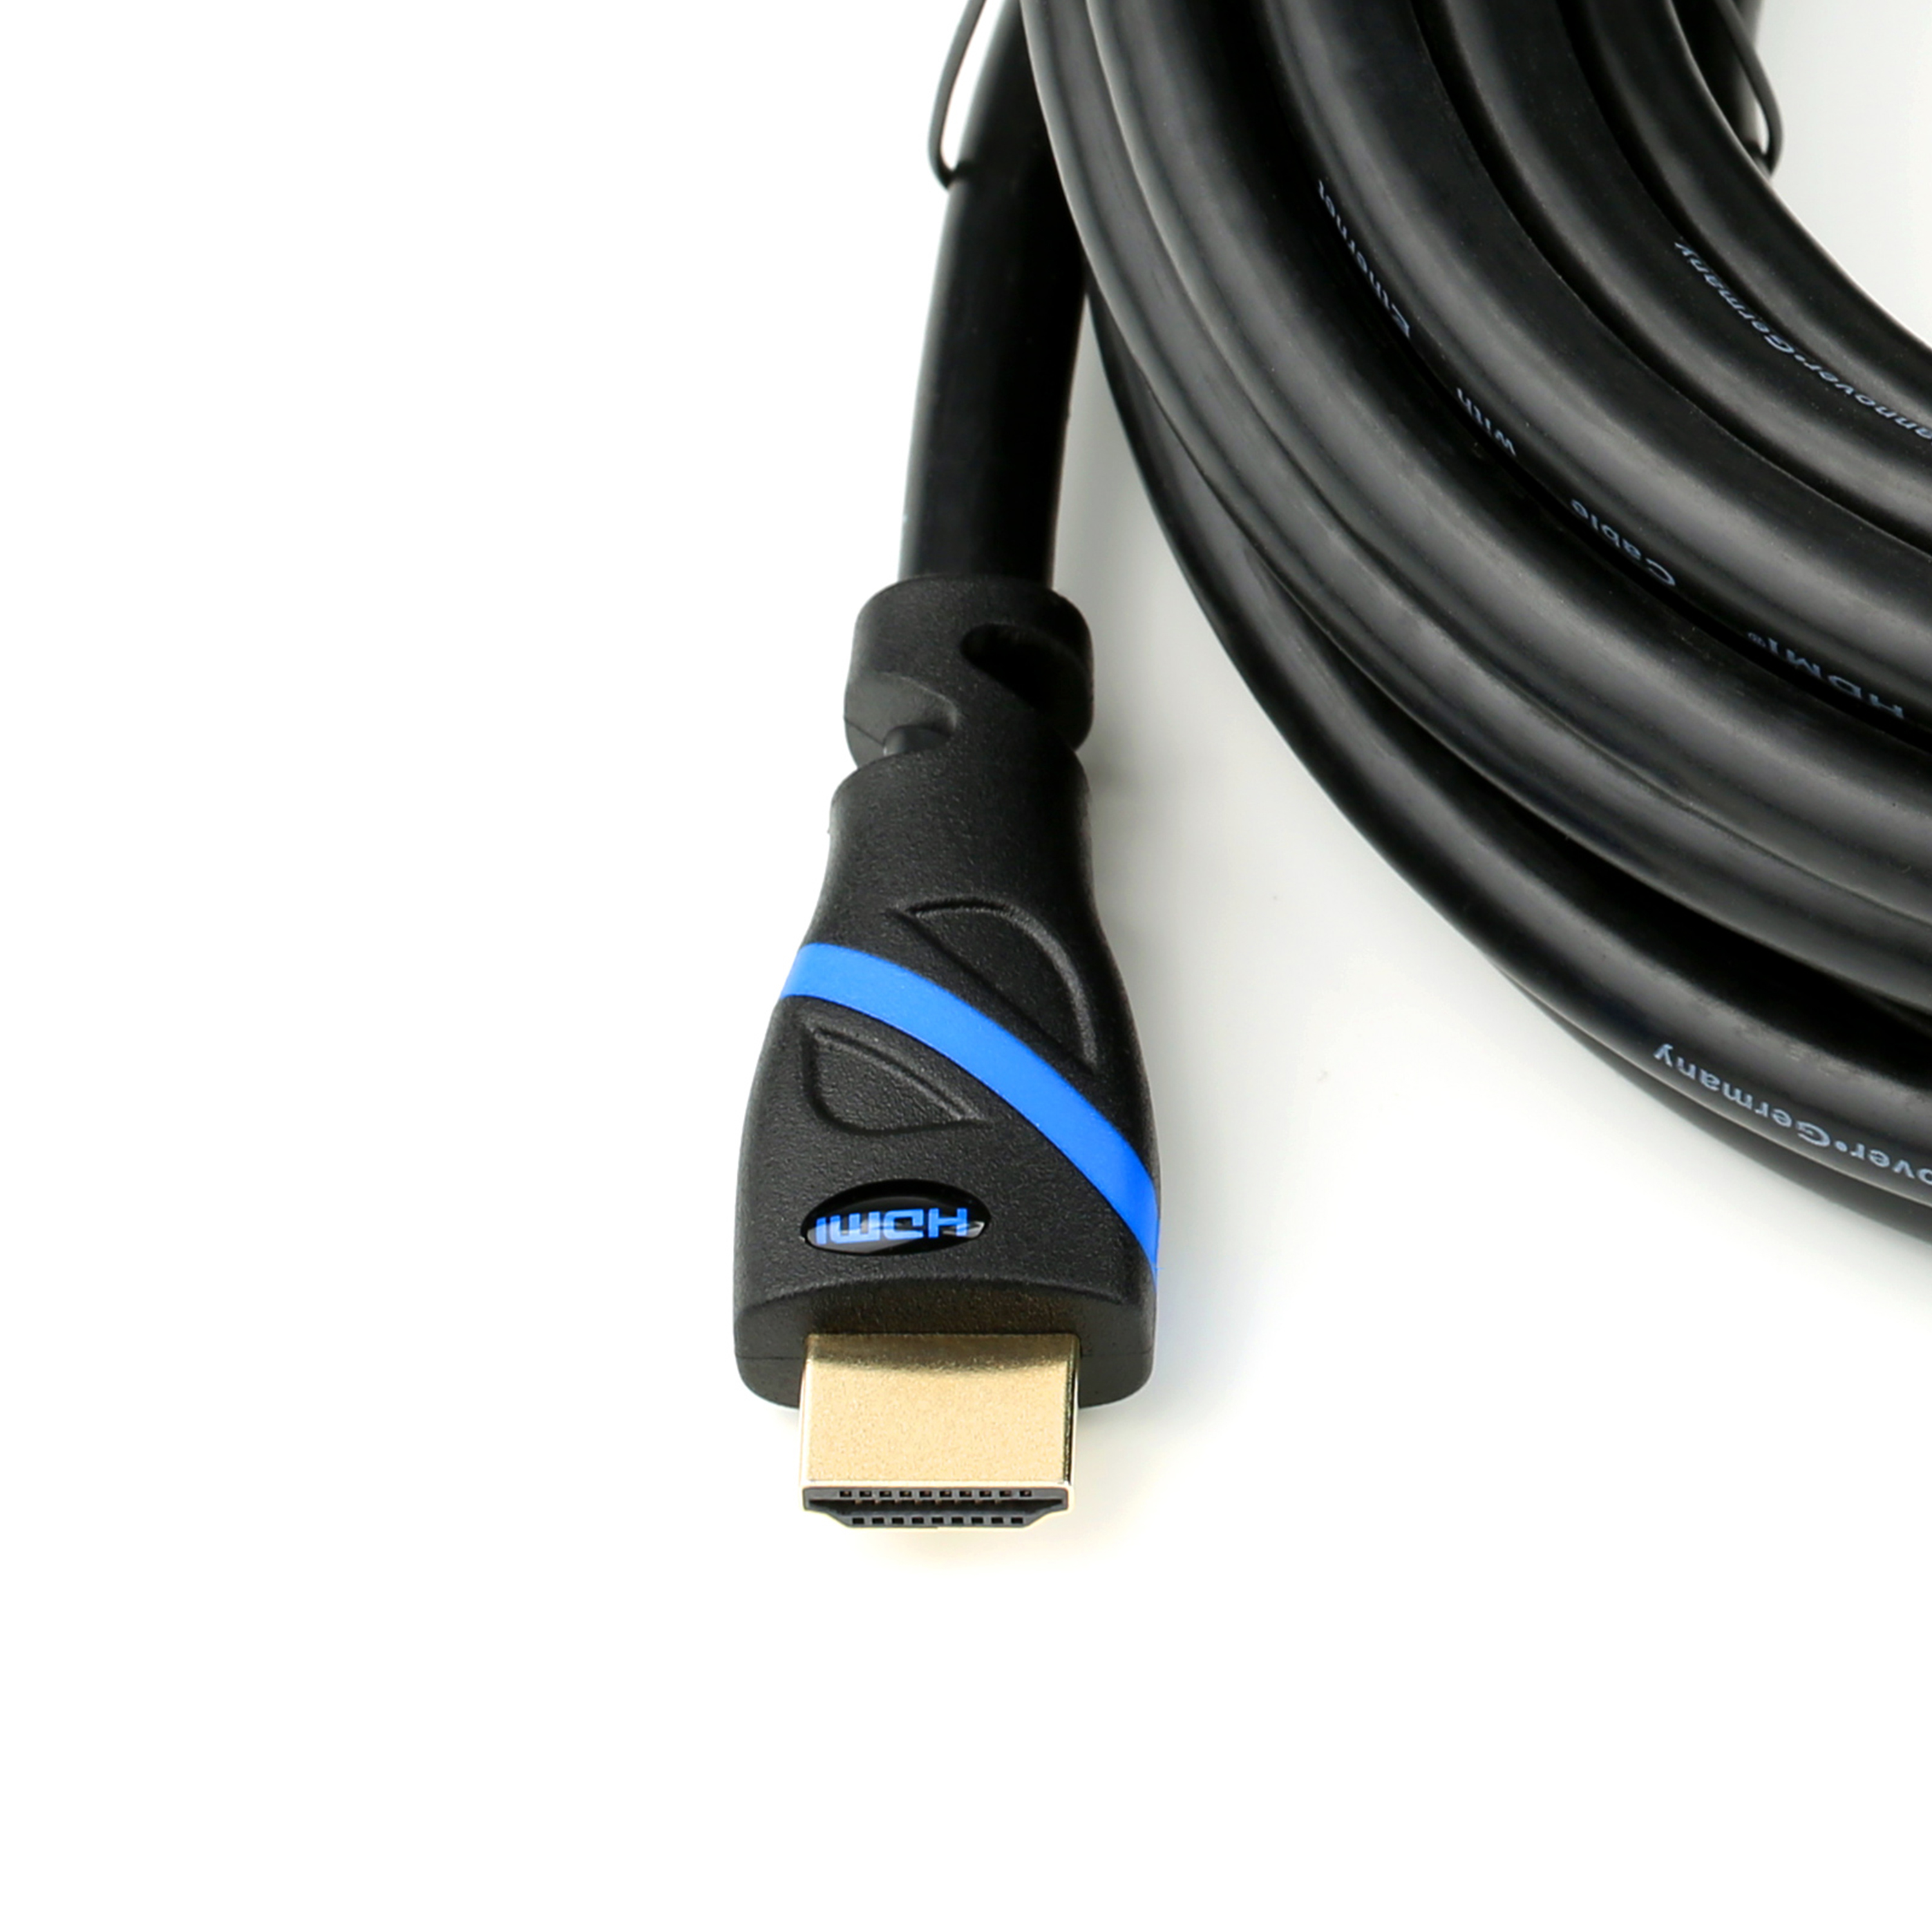 2.0 HDMI schwarz/blau Kabel, Kabel, CSL 3m HDMI